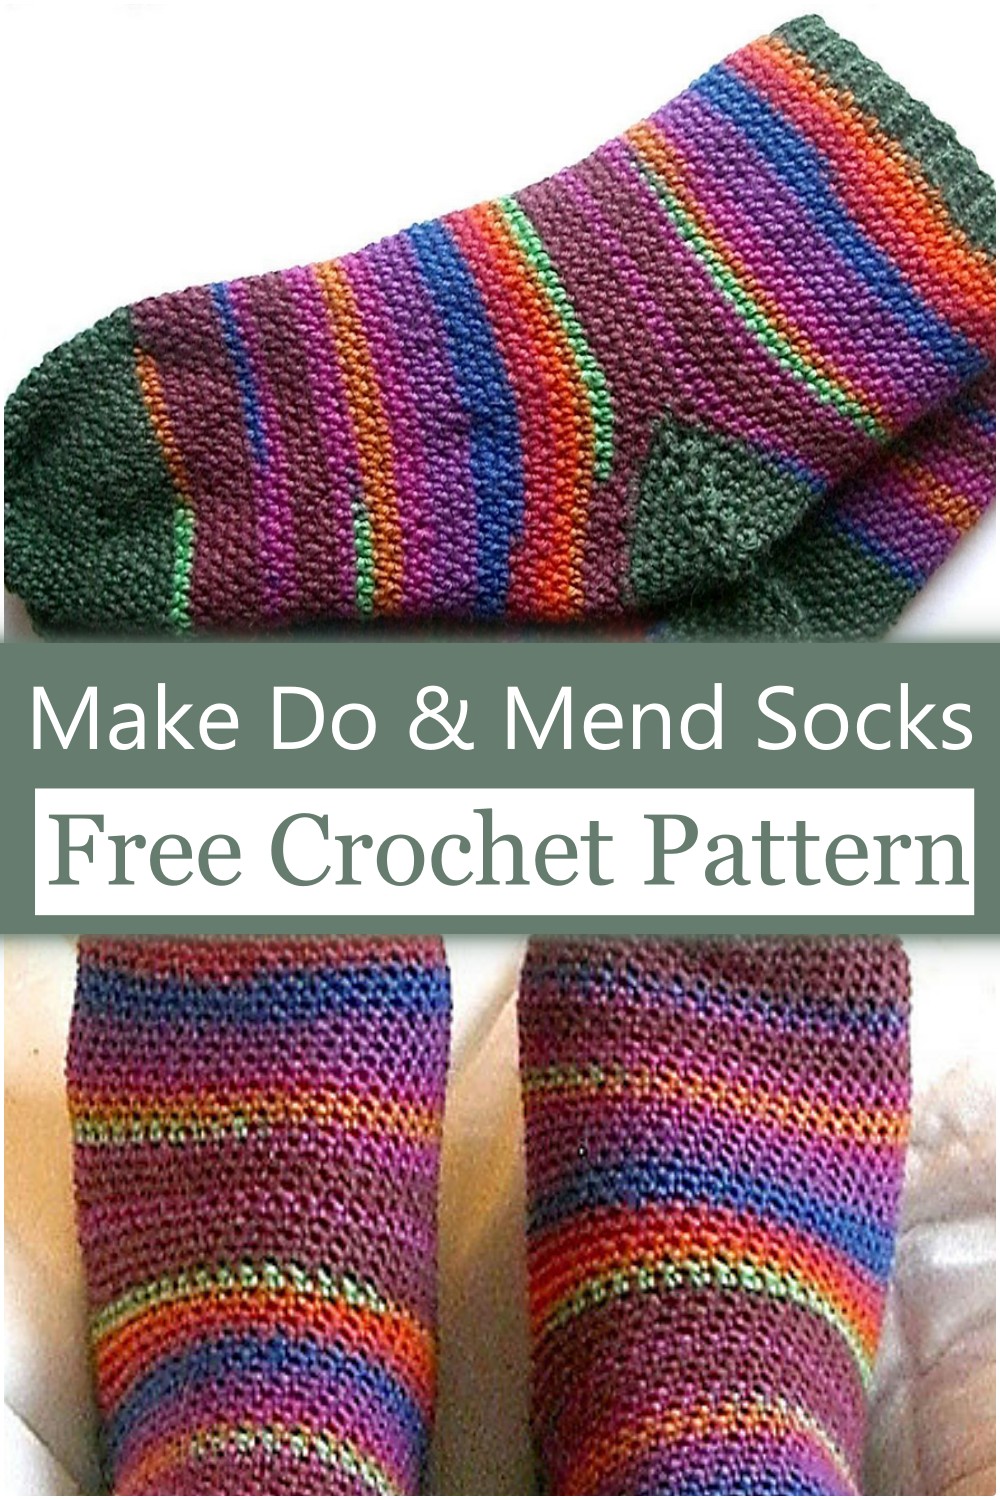 Make Do & Mend Crochet Socks